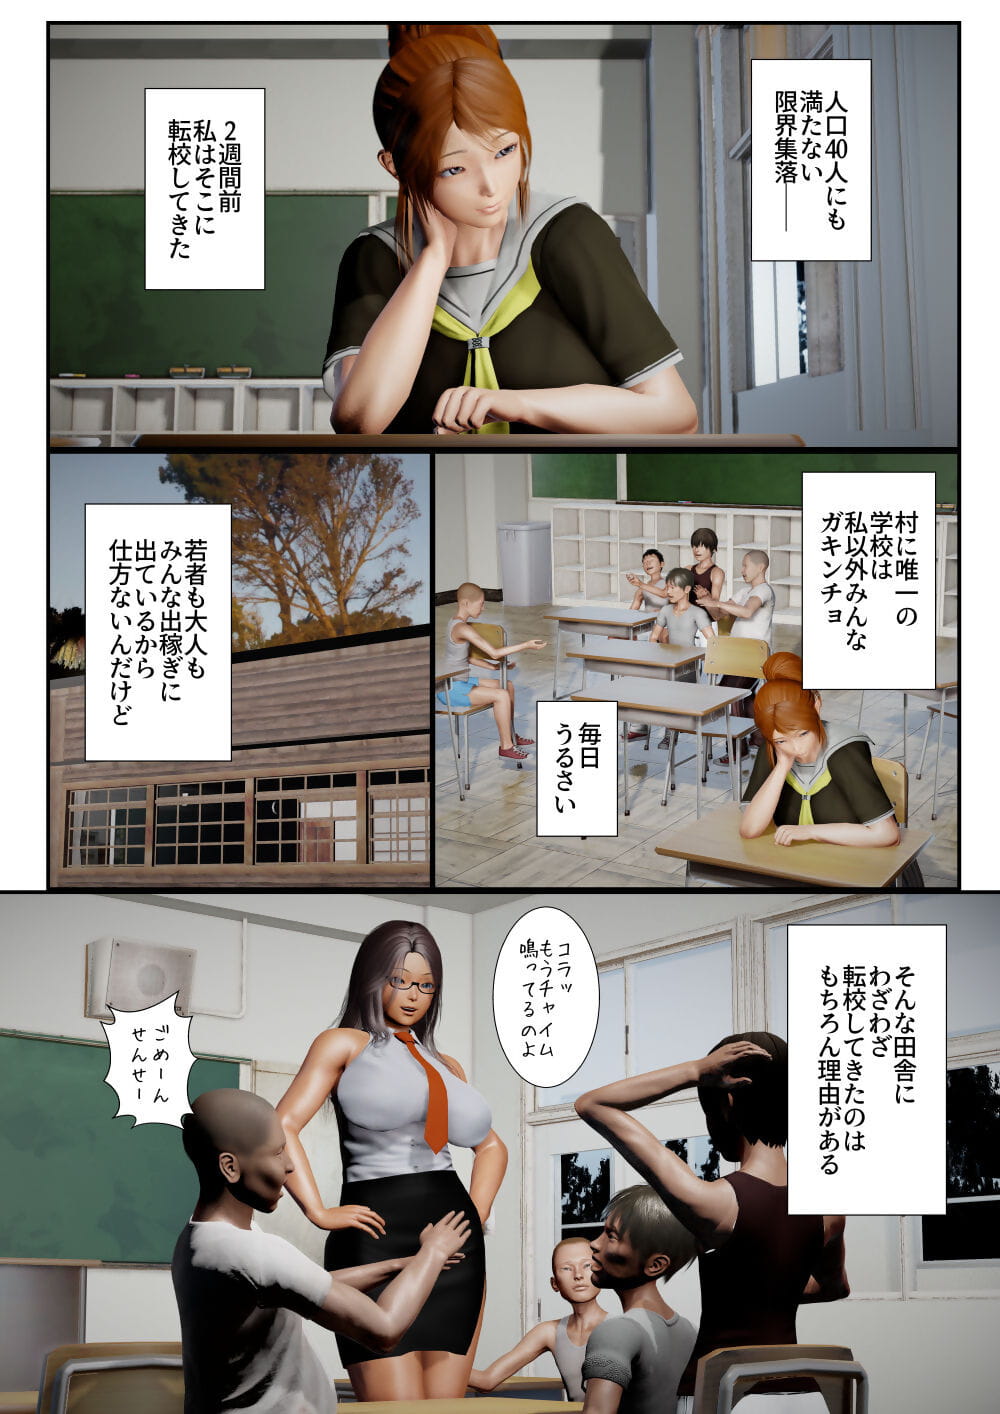 goriramu Тоума кенши shirizu Demon szermierz seria część 3 page 1